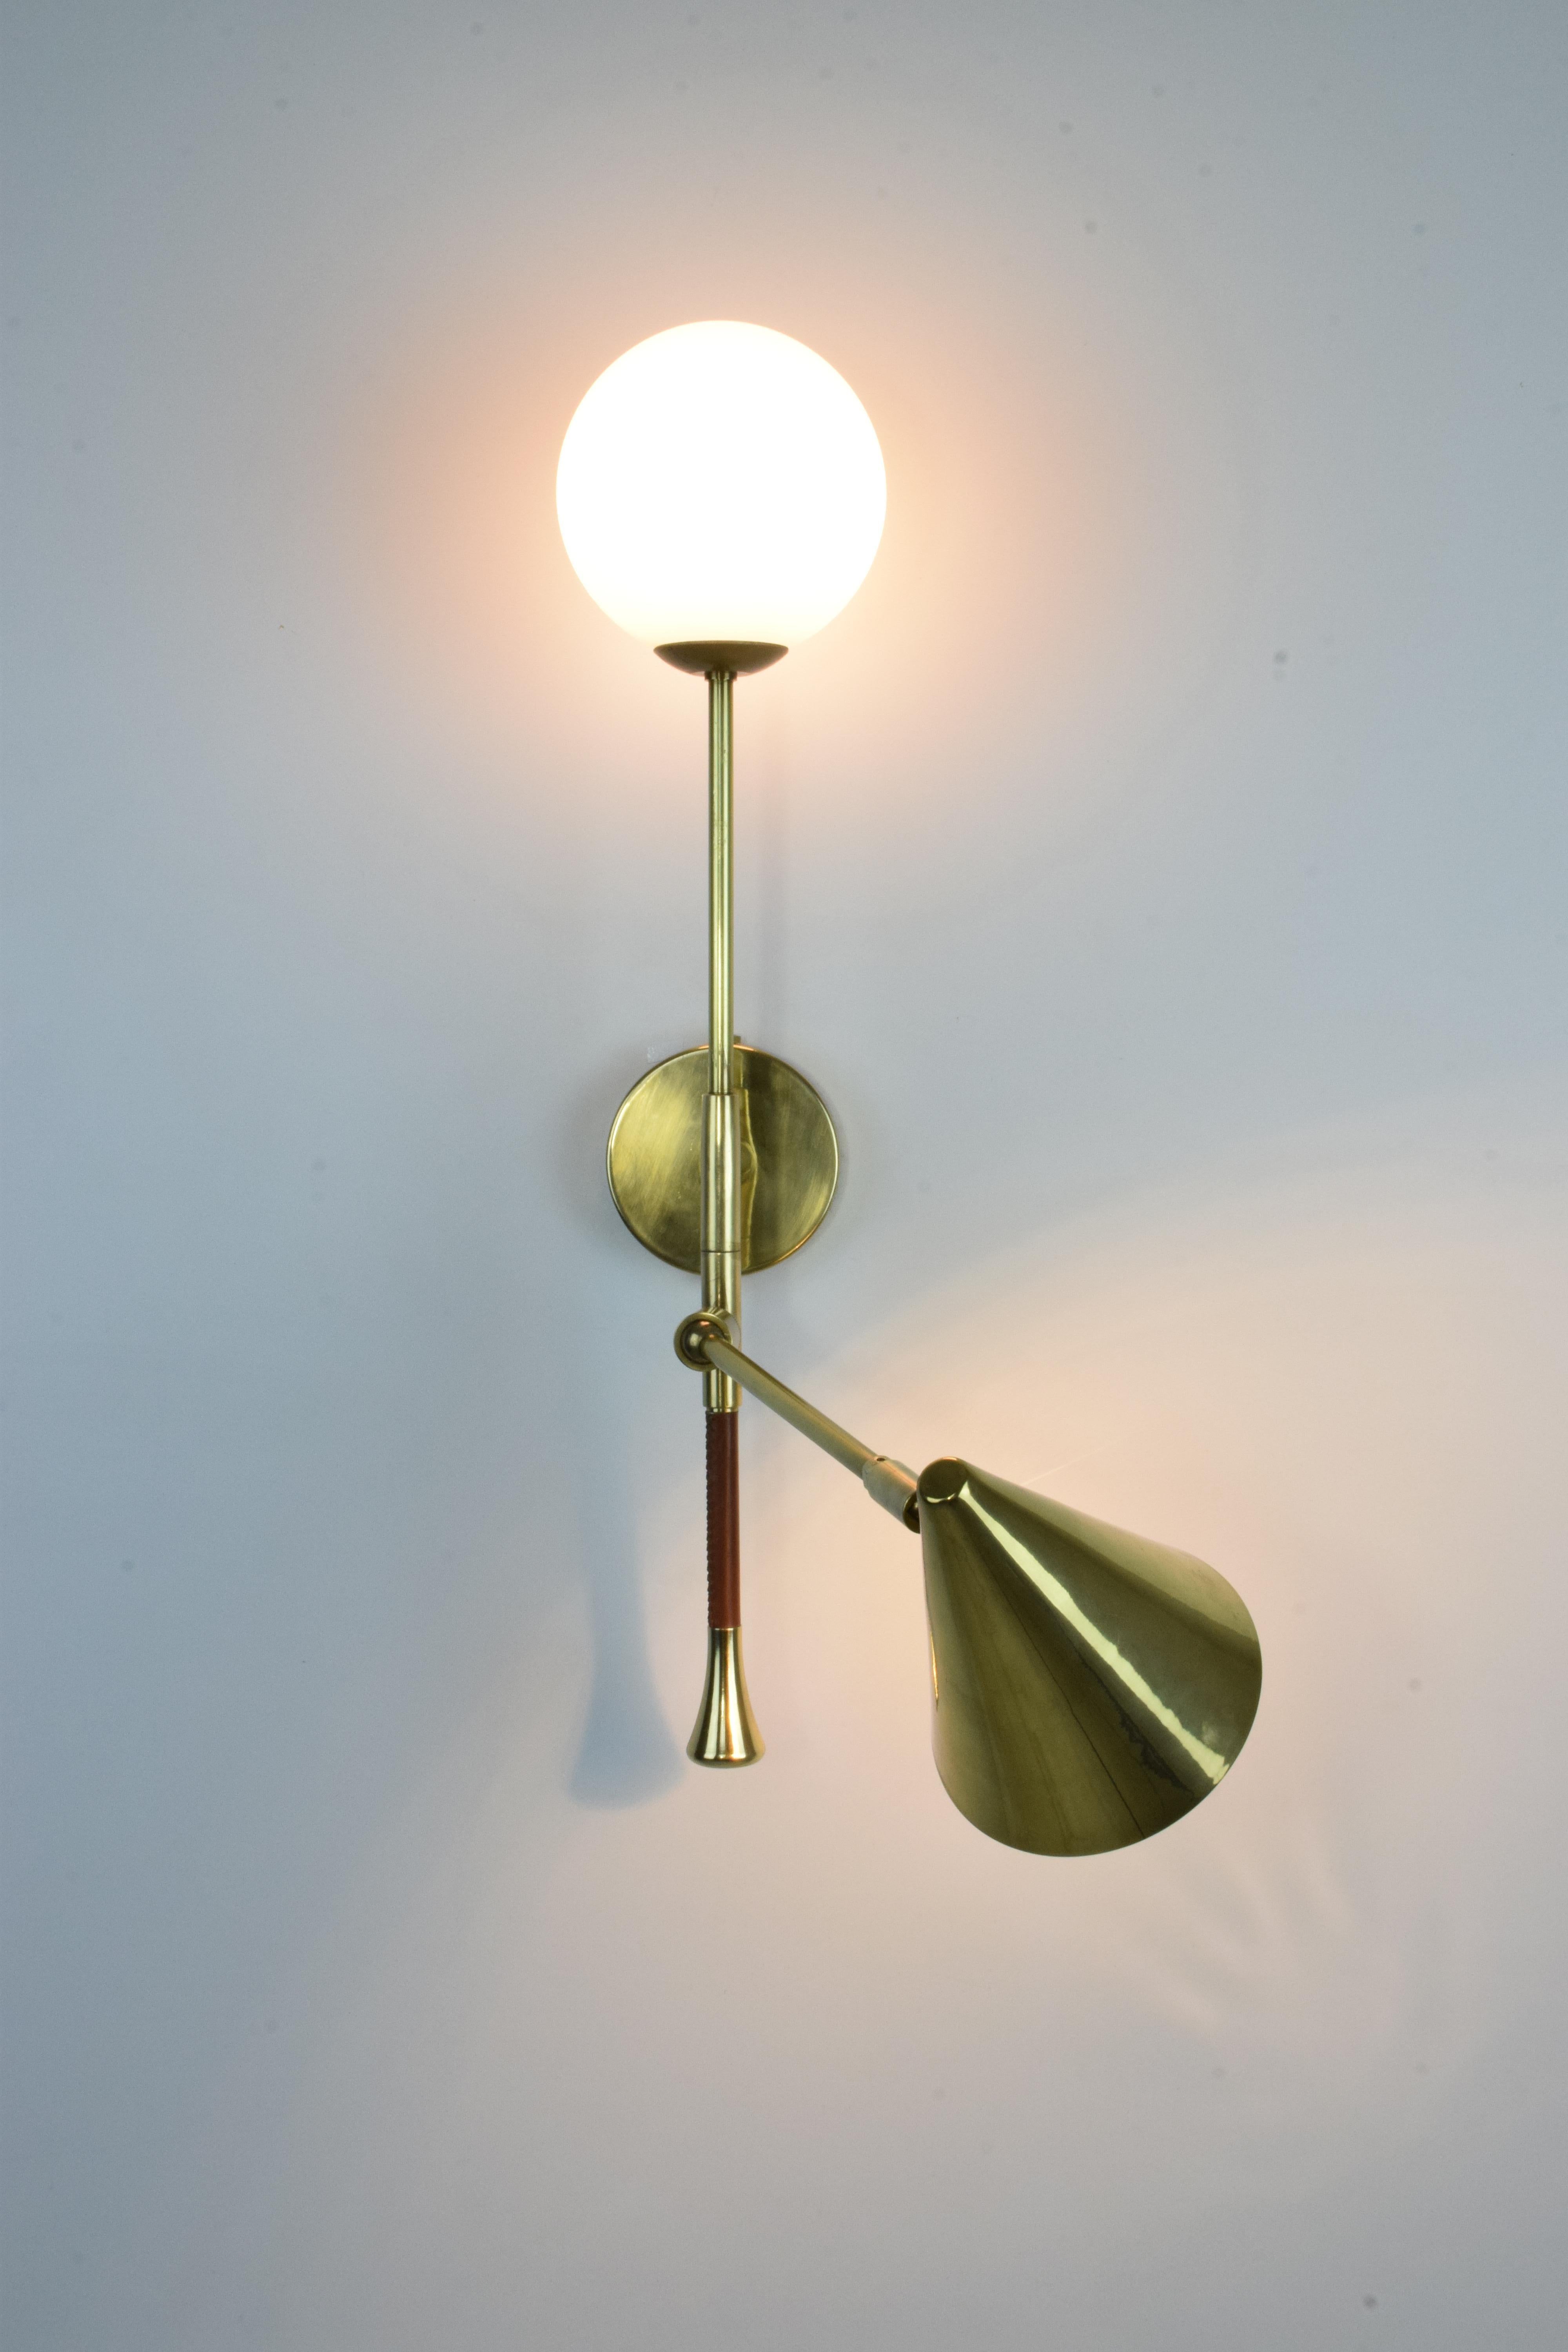 Modern De.Light W2 Contemporary Brass Articulating Double Wall Light, Flow 2 Collection